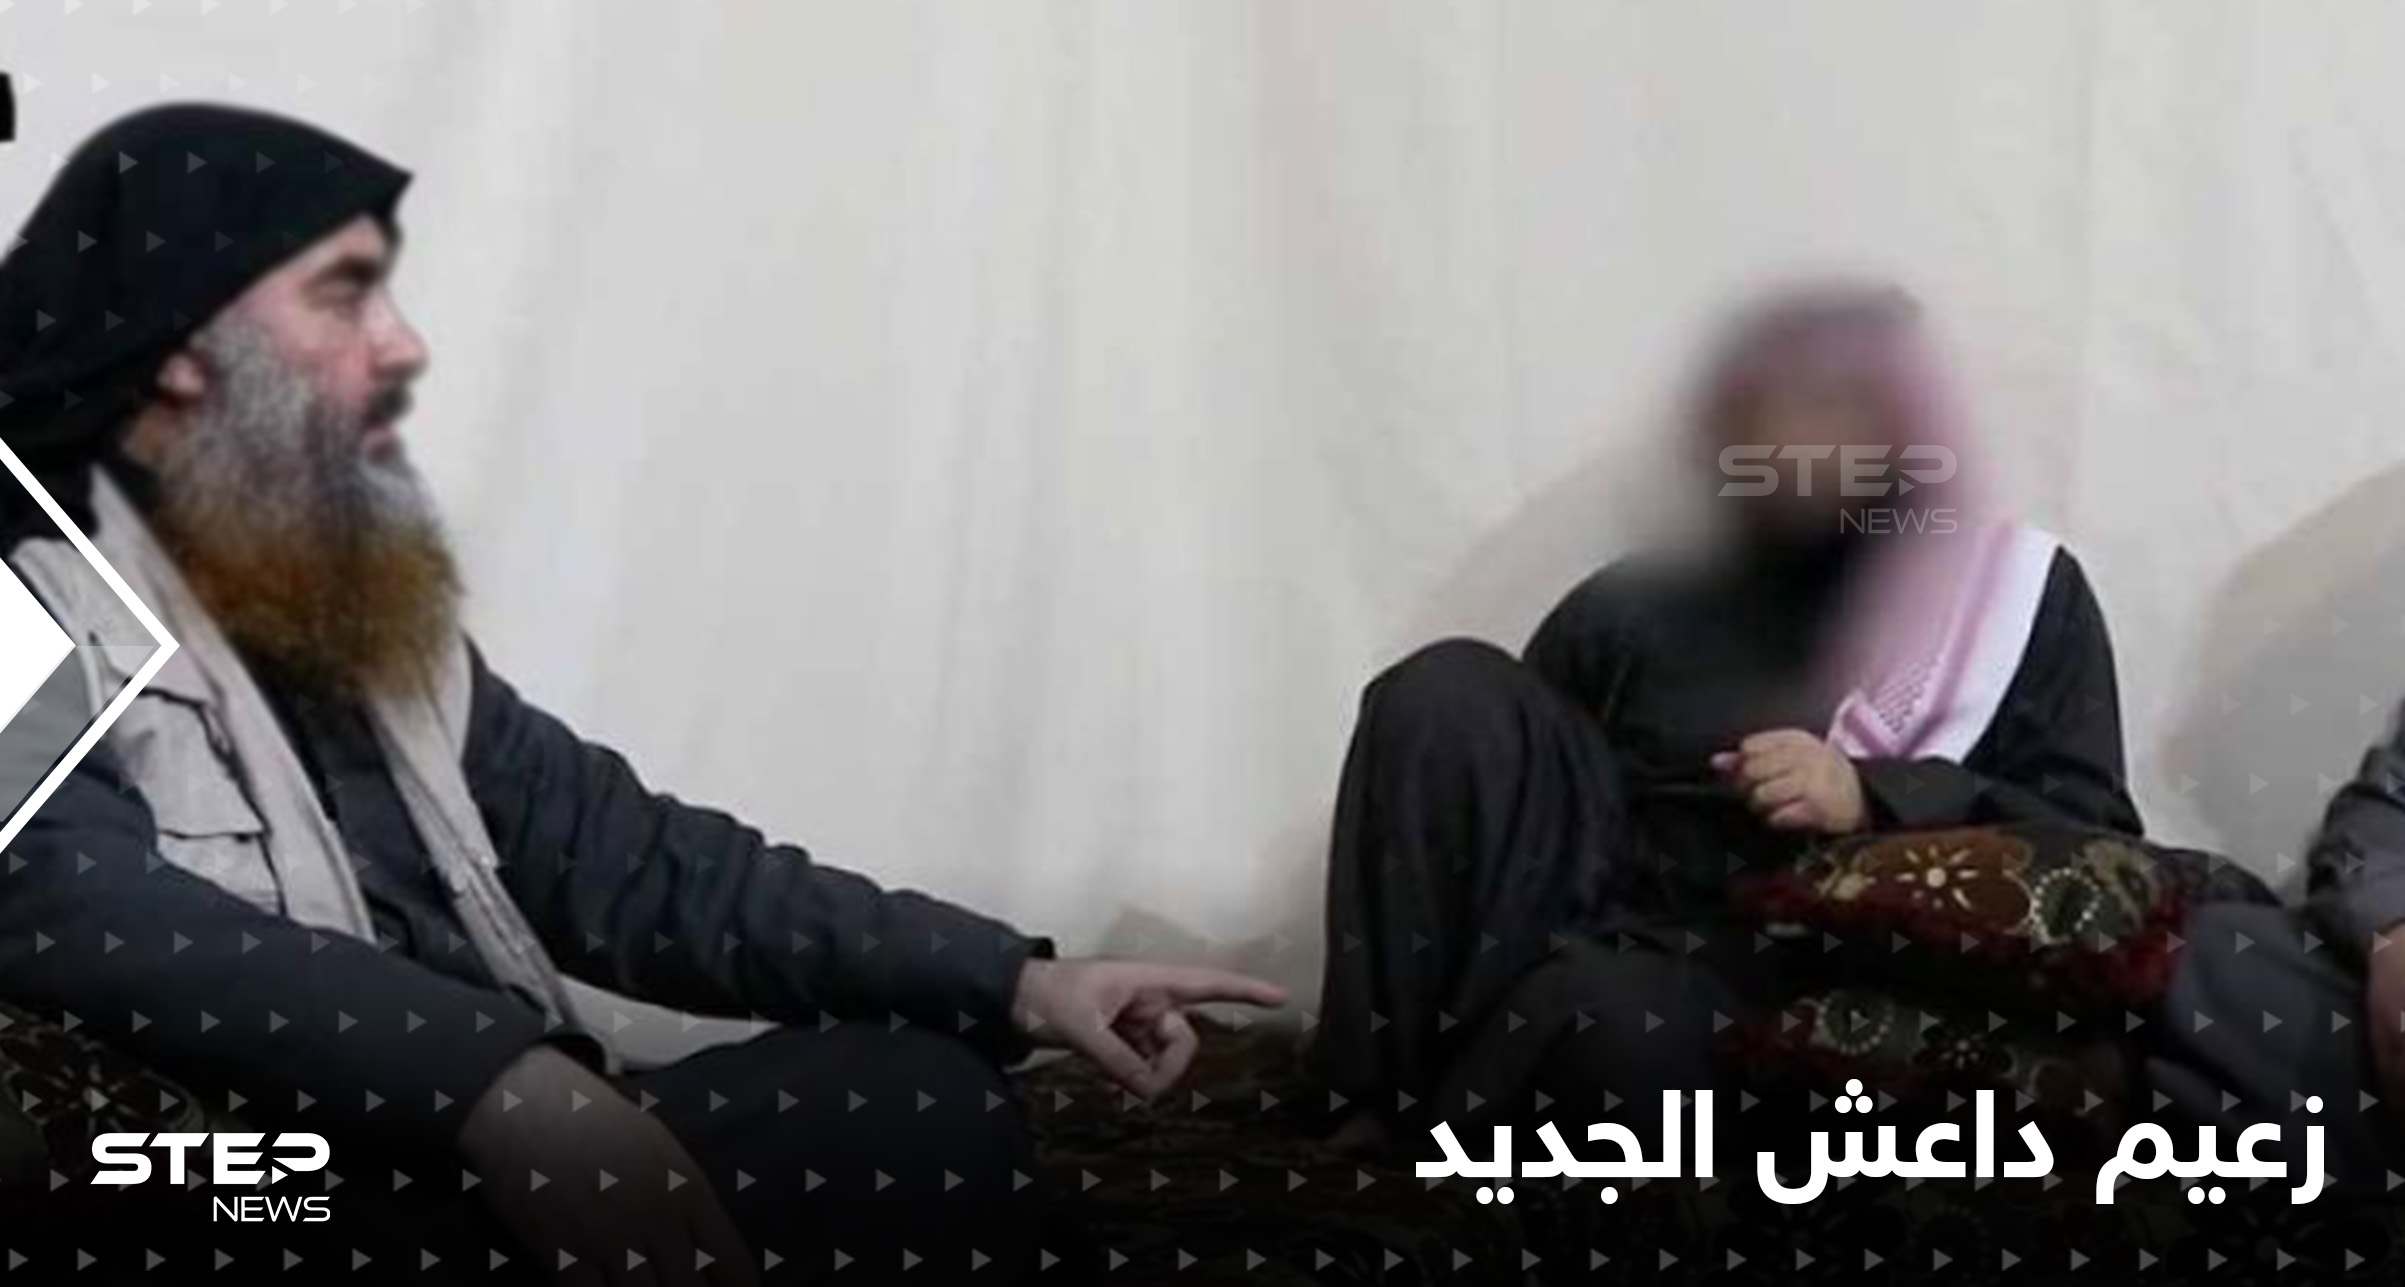 من هو أبو الحسن الهاشمي زعيم داعش الجديد الملقّب بـ"الأستاذ" وكيف تم اختياره